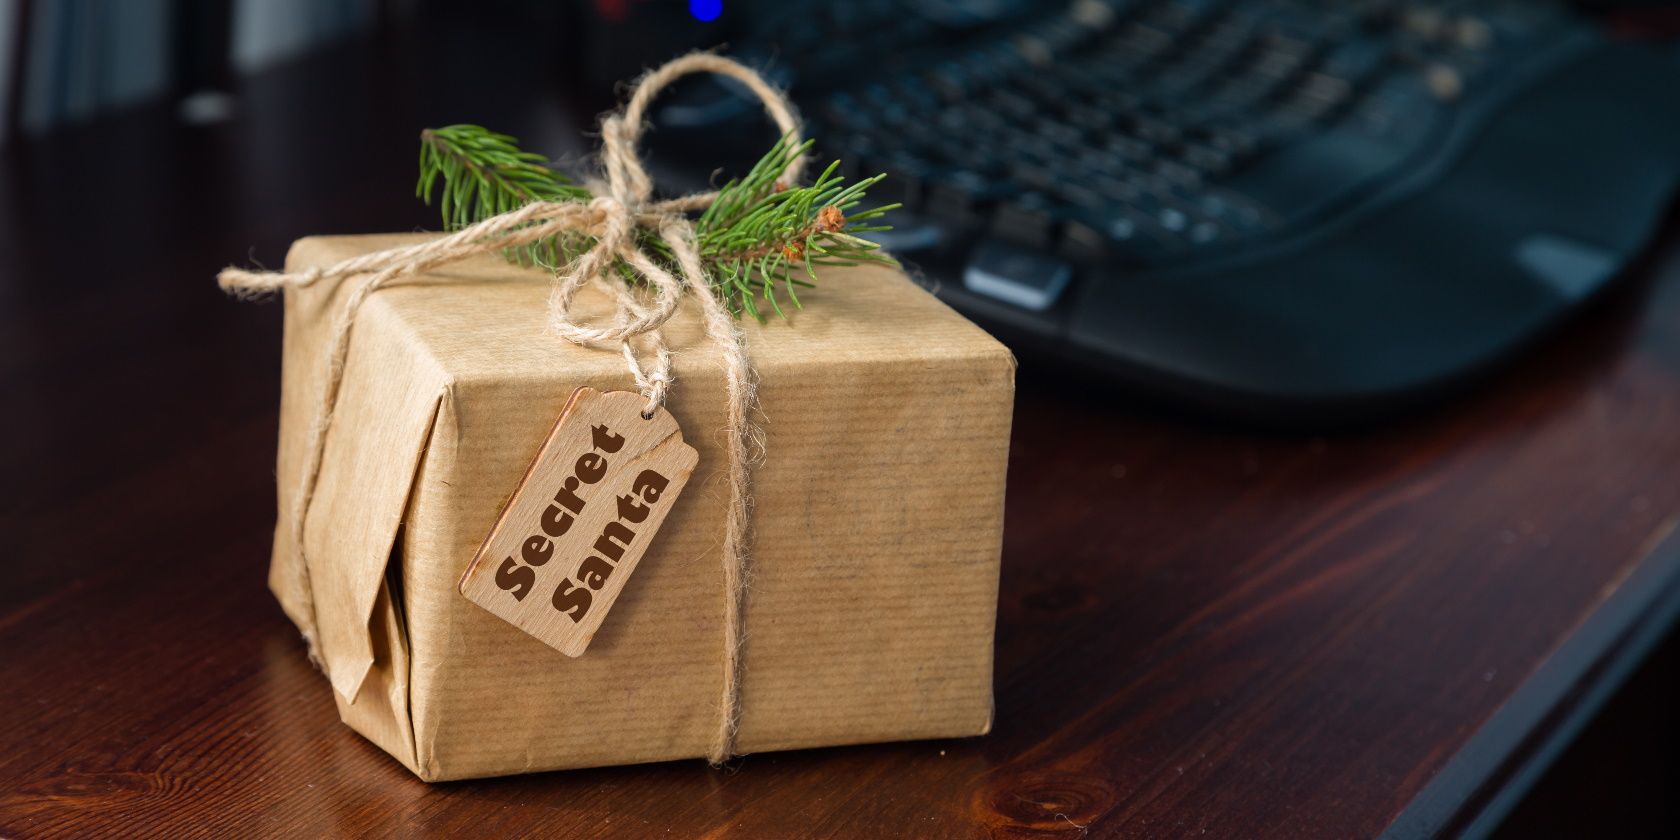 The Best Tech Gift Ideas for Secret Santa